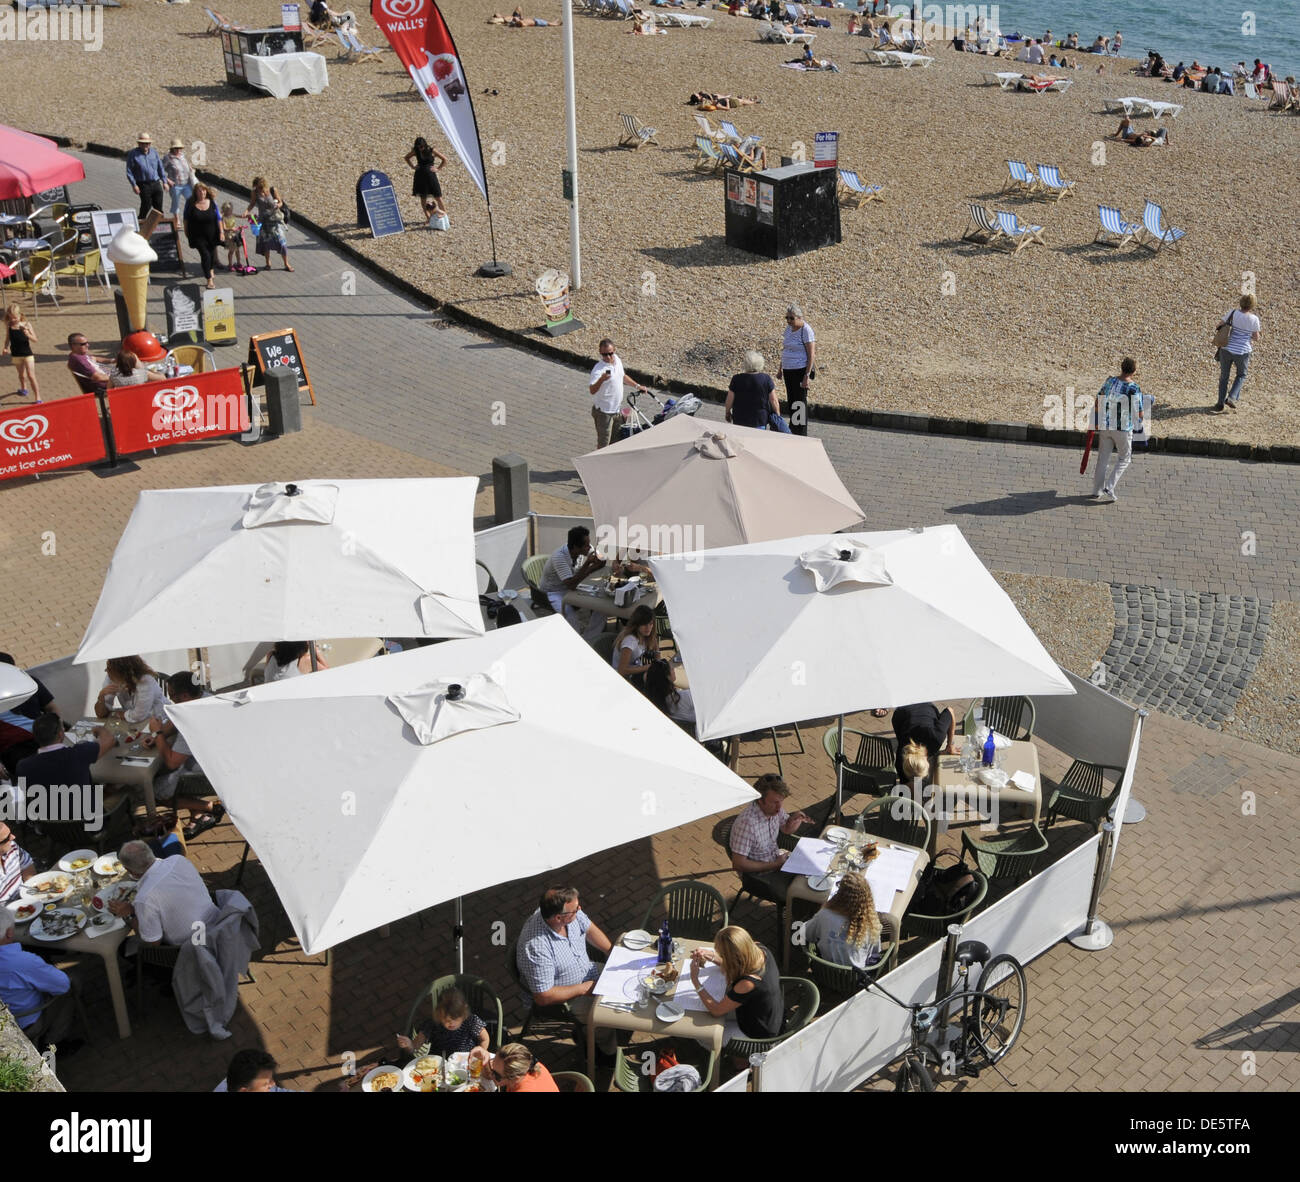 Ver más abajo cafeterías al lado de la playa de la playa de Brighton Brighton, East Sussex, Inglaterra Foto de stock